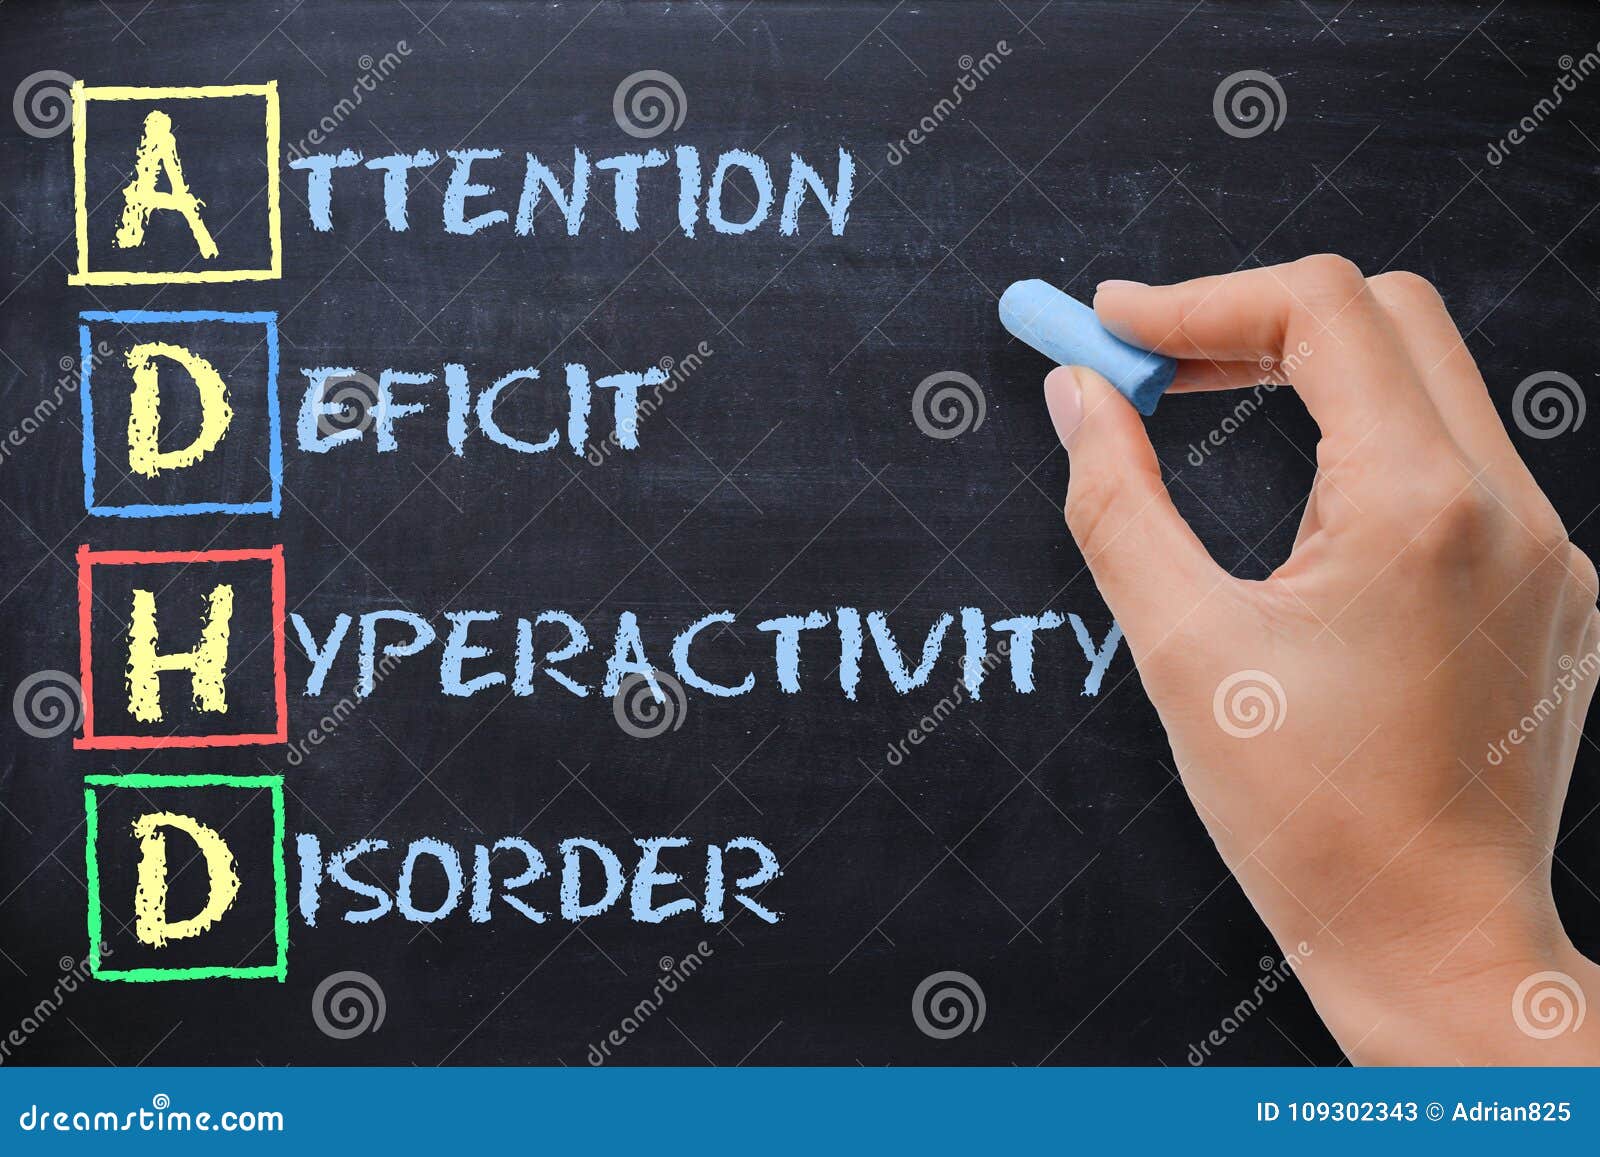 adhd Ã¢â¬â attention deficit hyperactivity disorder handwritten by woman on blackboard